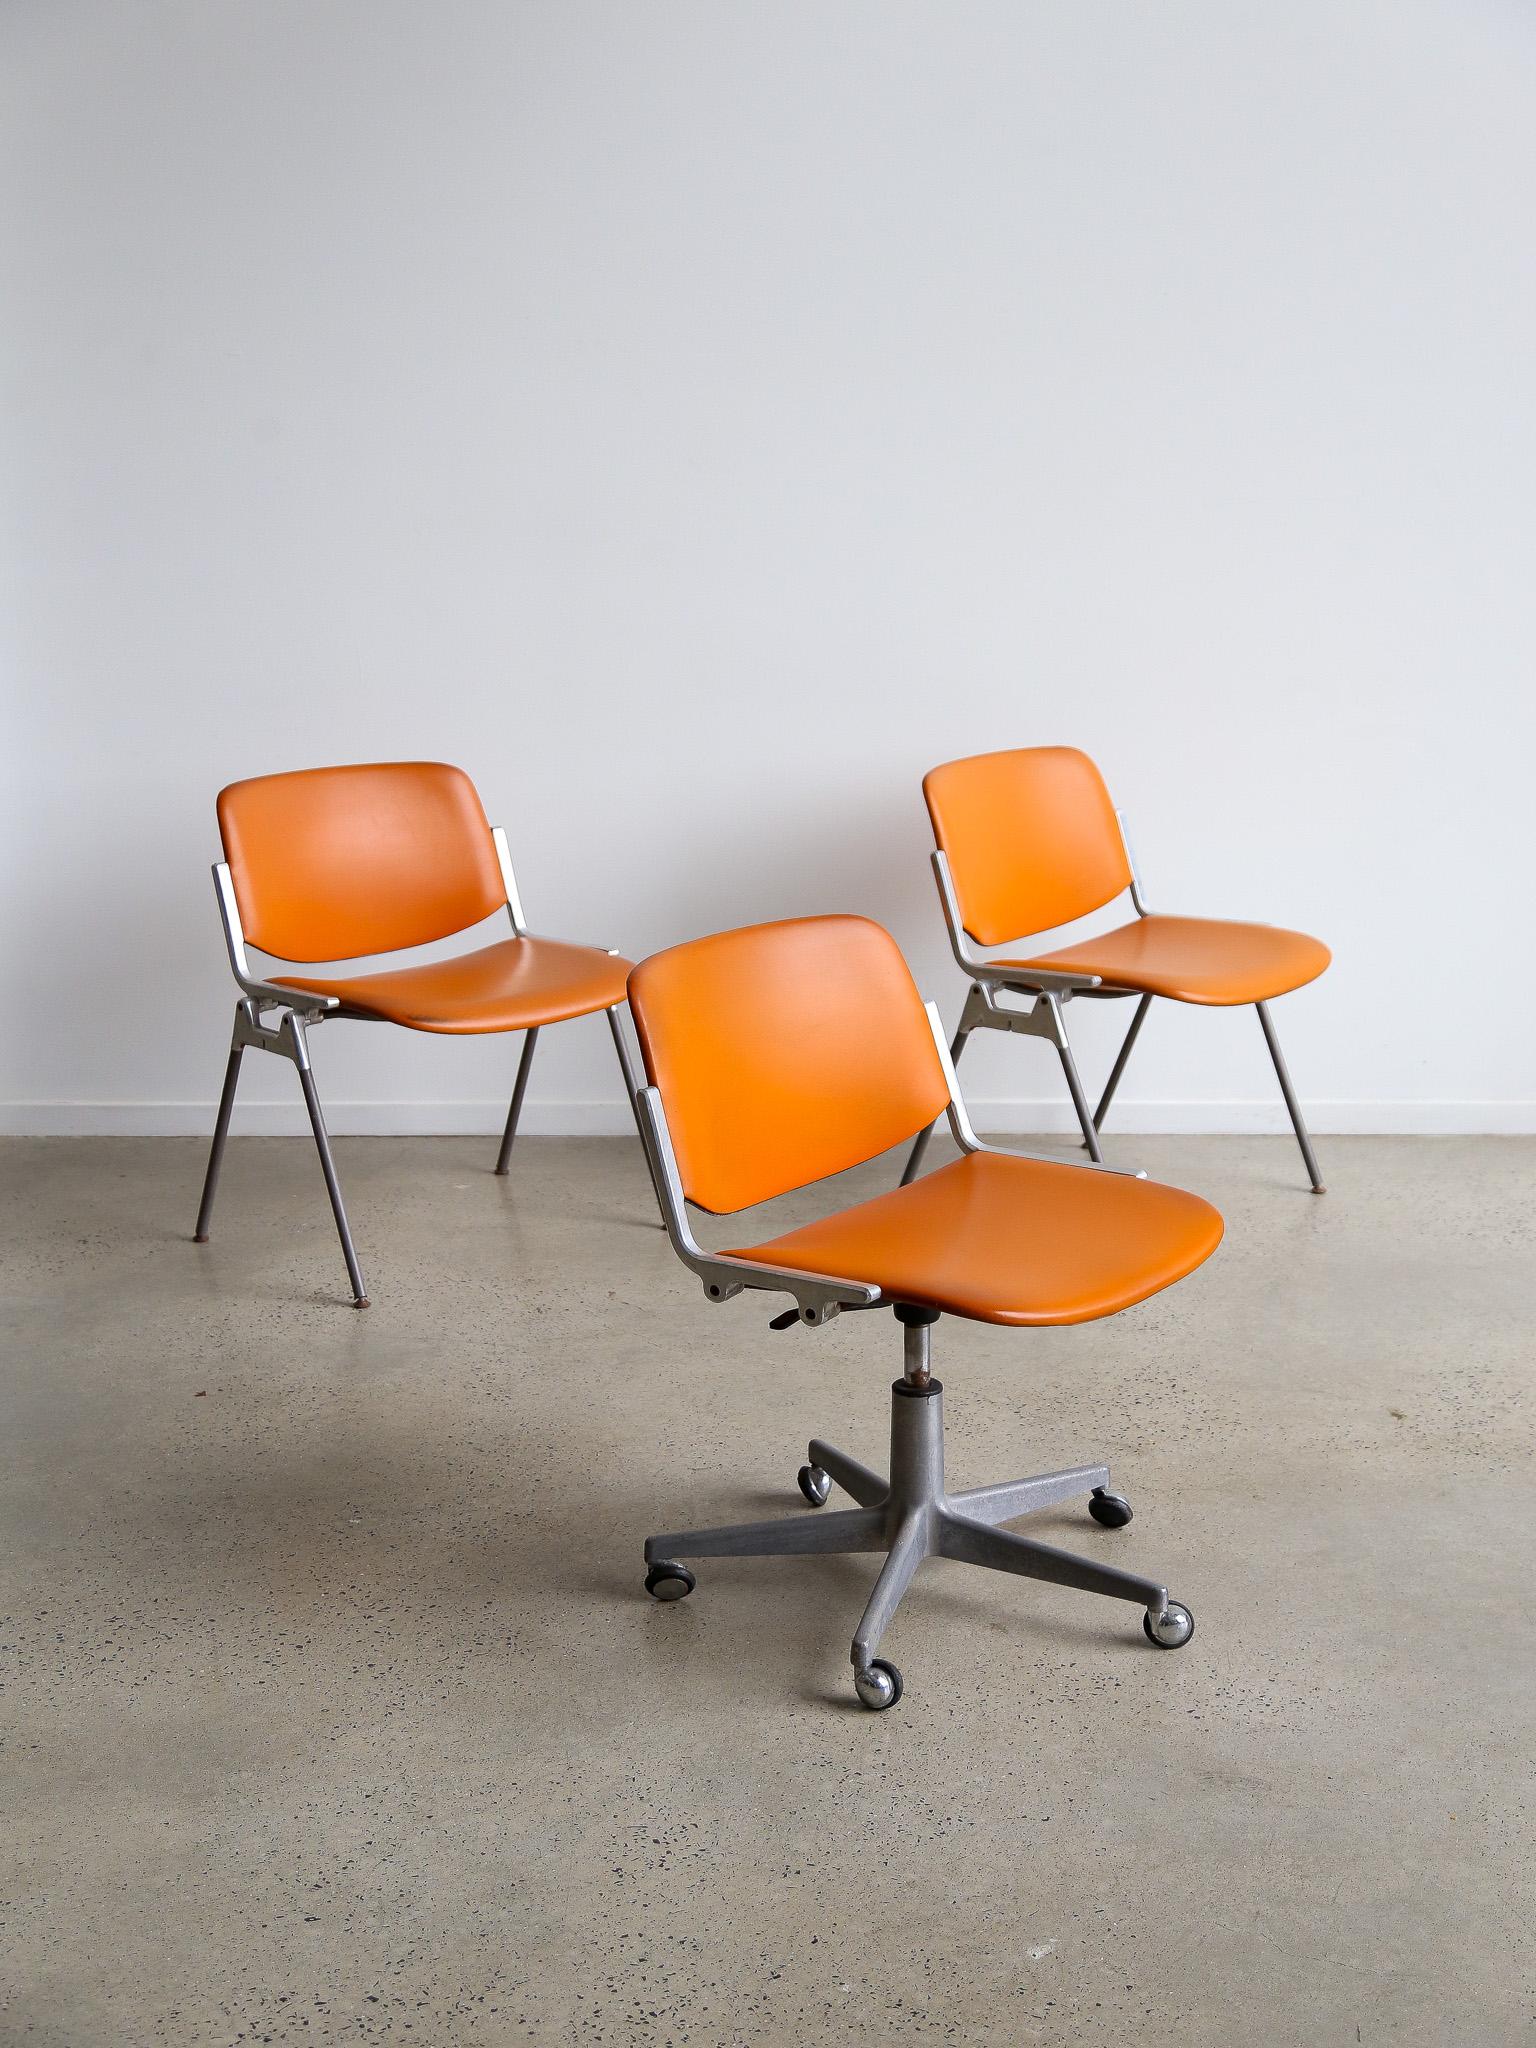 Dieses Set aus zwei DSC 106-Stühlen wurde 1965 von Giancarlo Piretti für die italienische Firma Castelli entworfen. Er ist eines der bekanntesten Stuhlmodelle der Marke und immer noch ein Objekt mit einem innovativen und attraktiven Design. Die